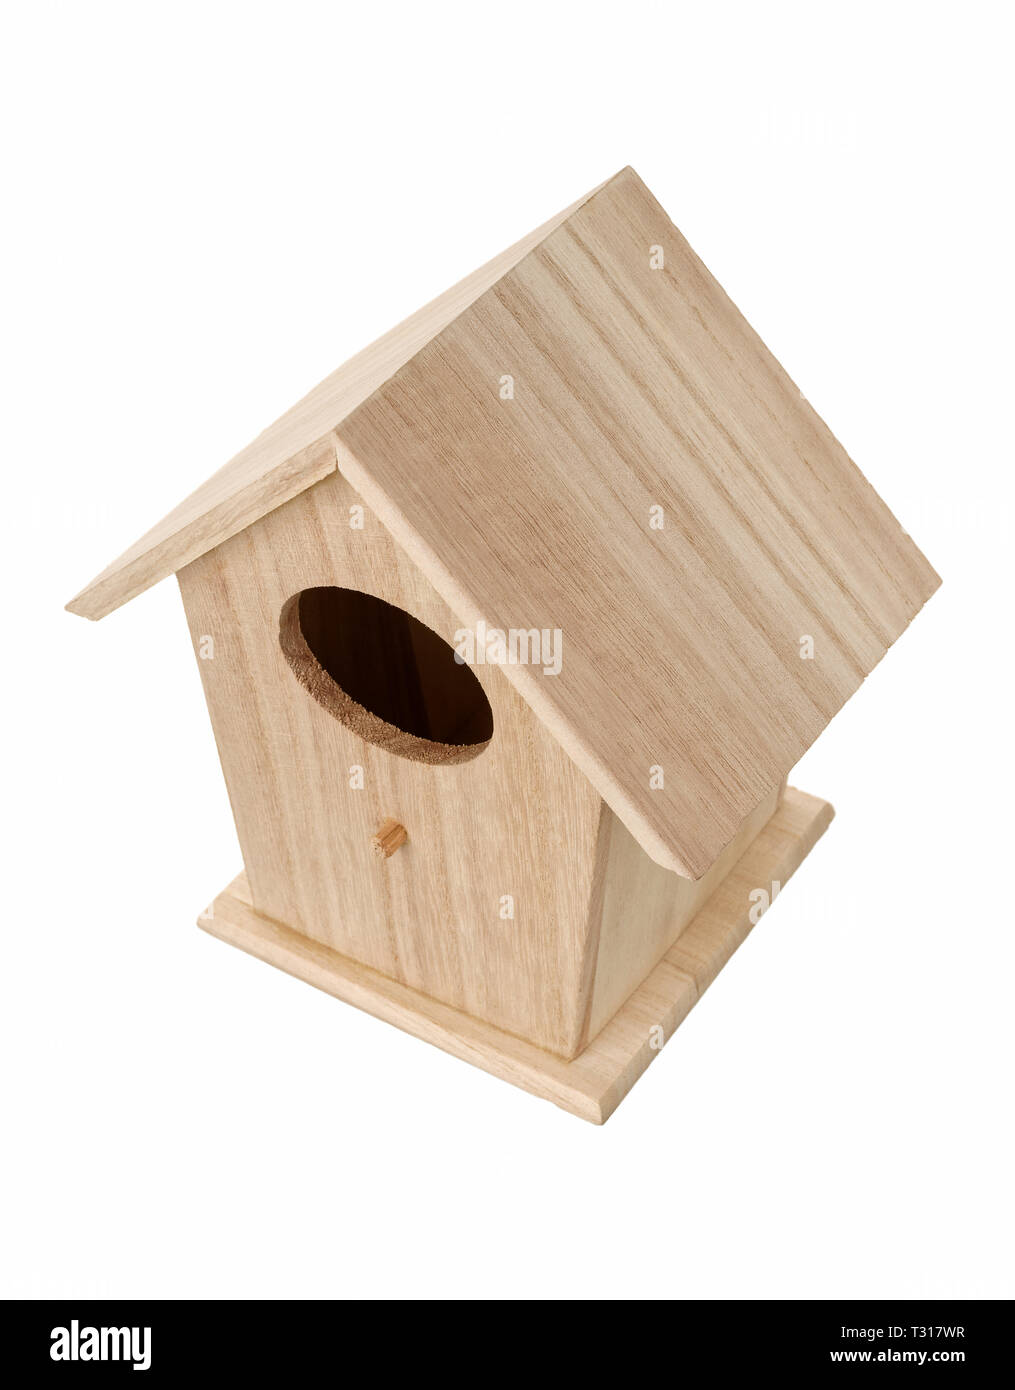 Oggetti isolati: in legno realizzati a mano di nidificazione di uccelli casella, bird house, su sfondo bianco Foto Stock